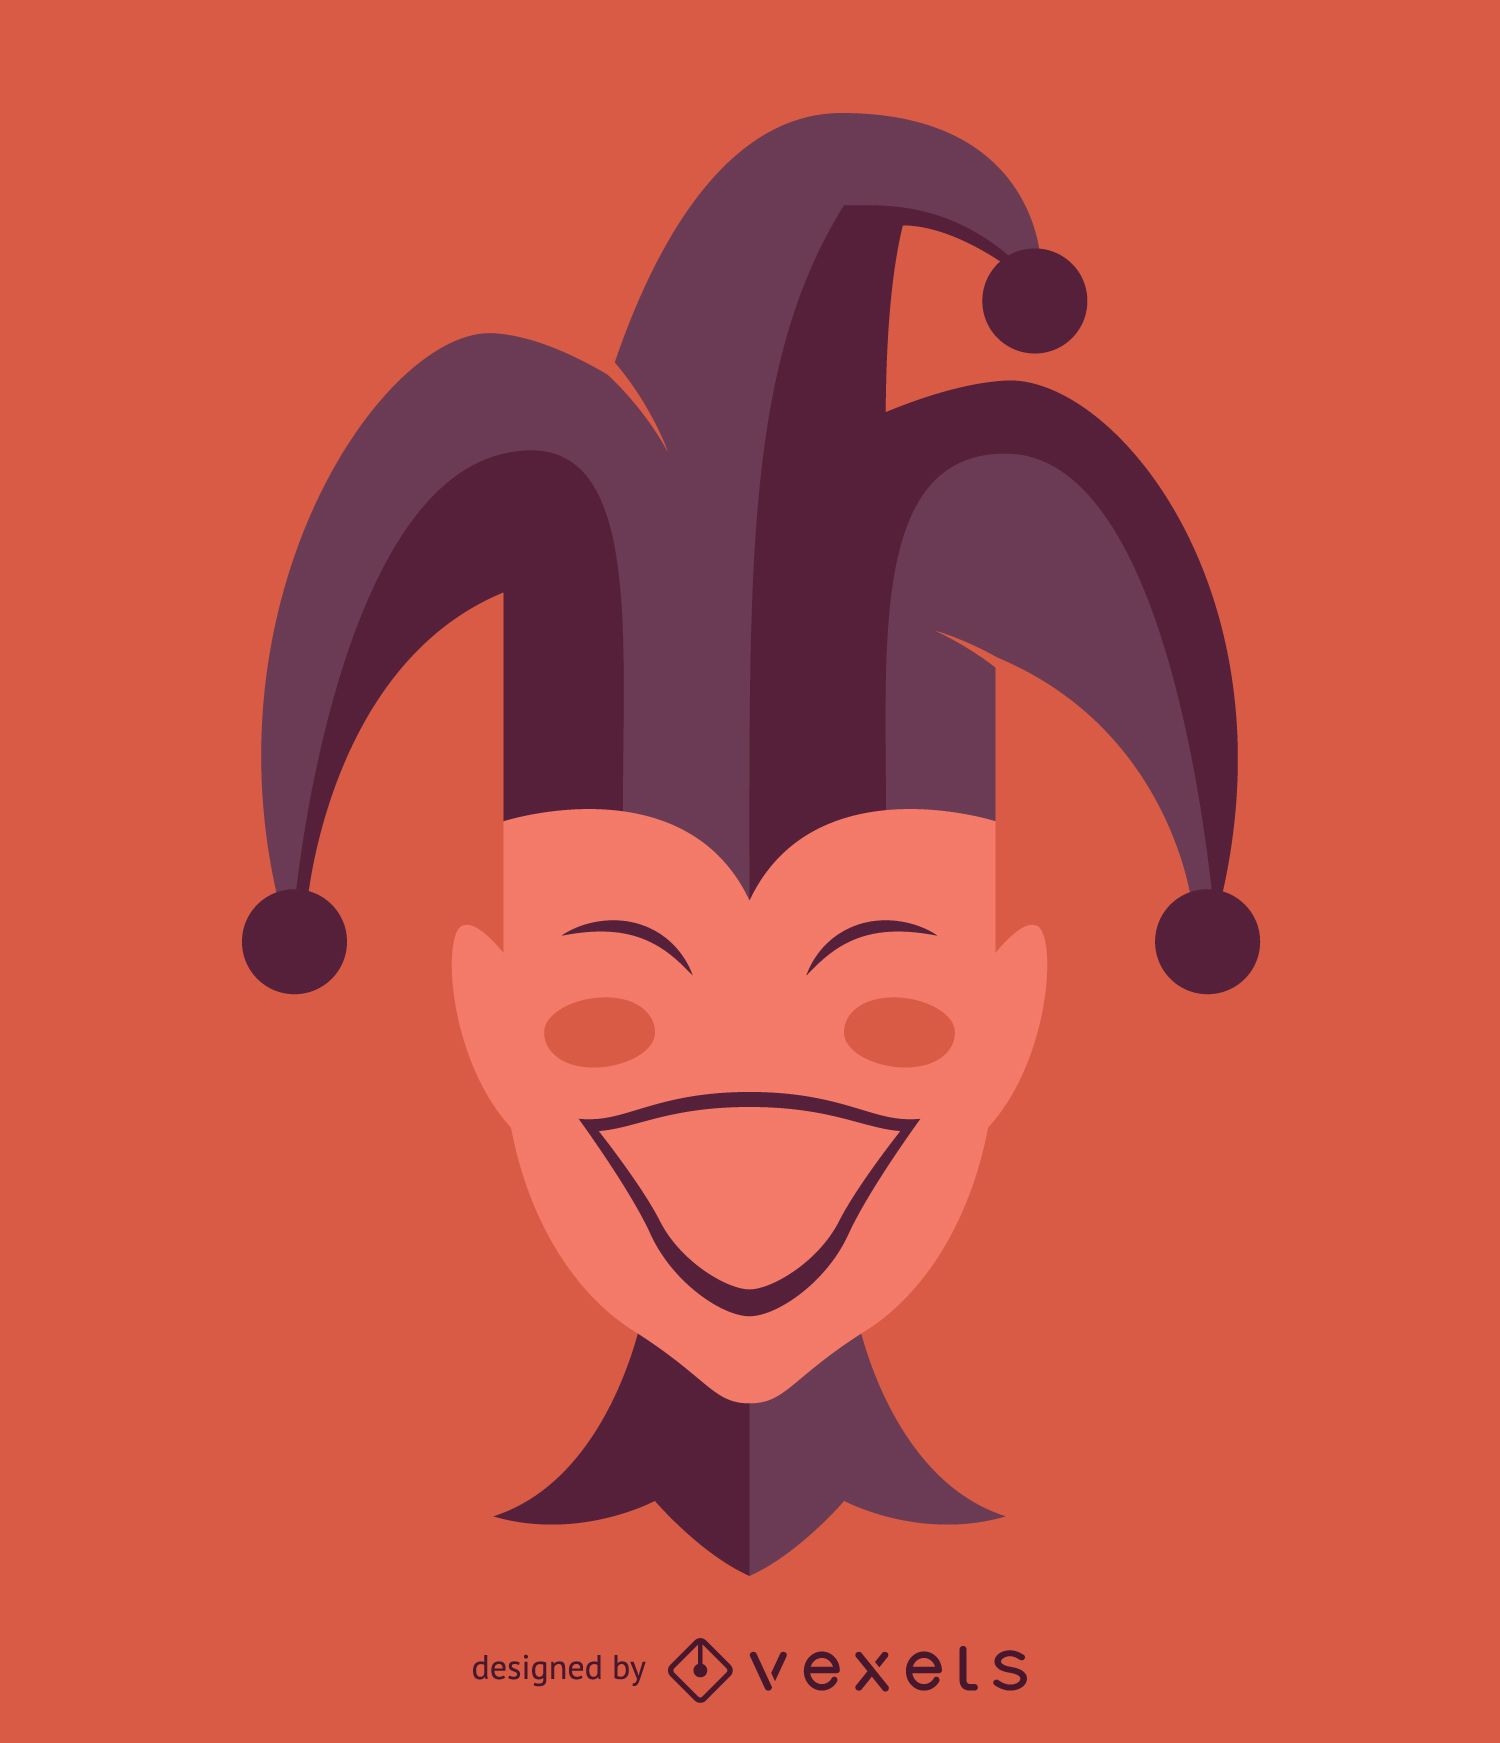 Joker Smile Sticker PNG Transparent Images Free Download | Vector Files |  Pngtree